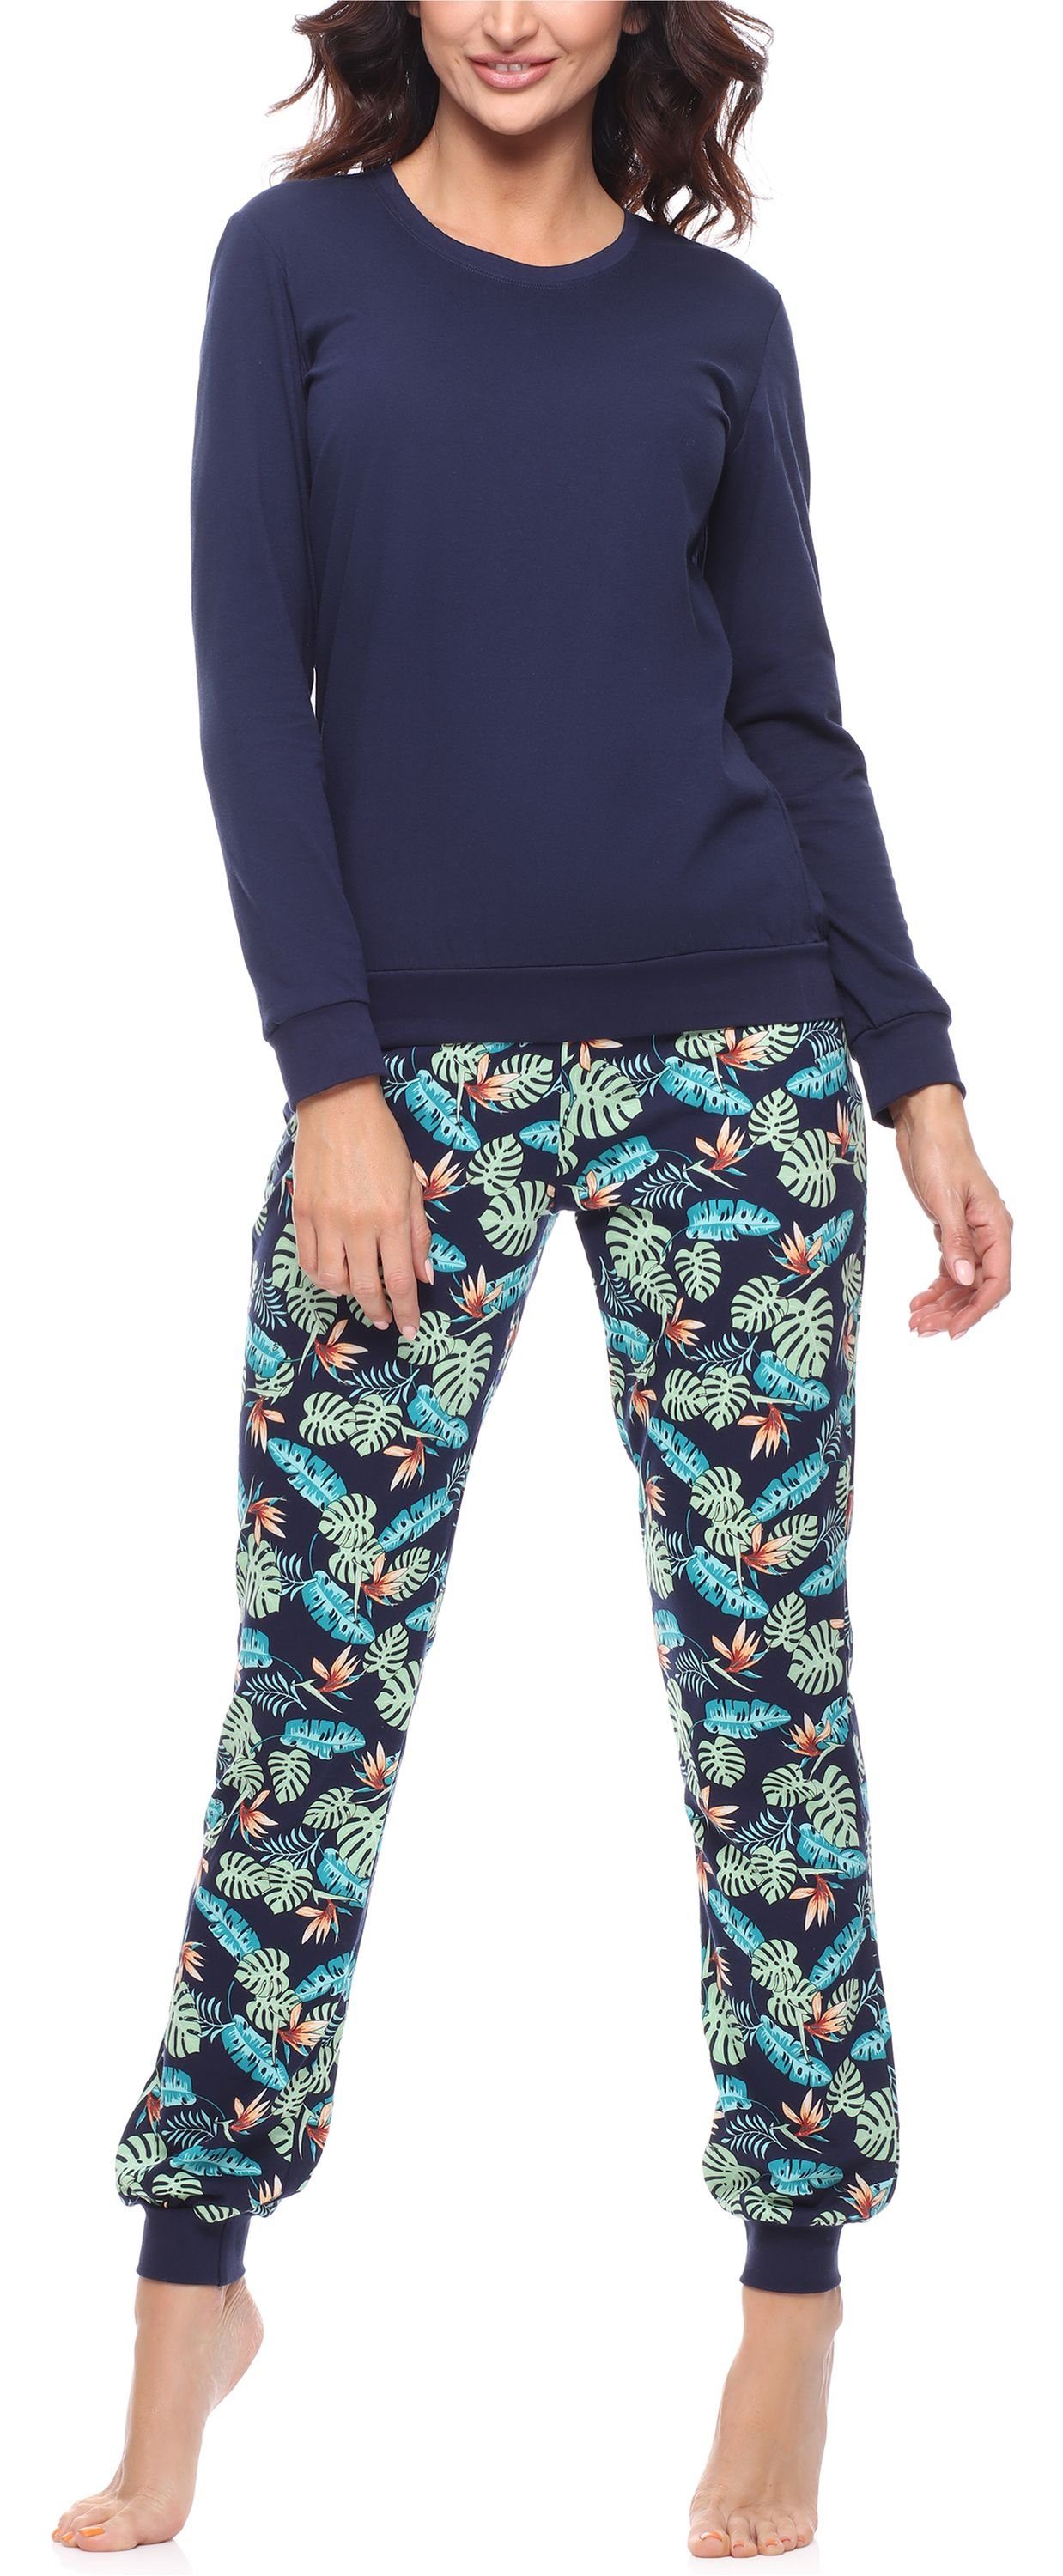 Merry Style Schlafanzug Damen Schlafanzug Zweiteiler Pyjama lang bunt mit Muster MS10-268 Marineblau/Blätter